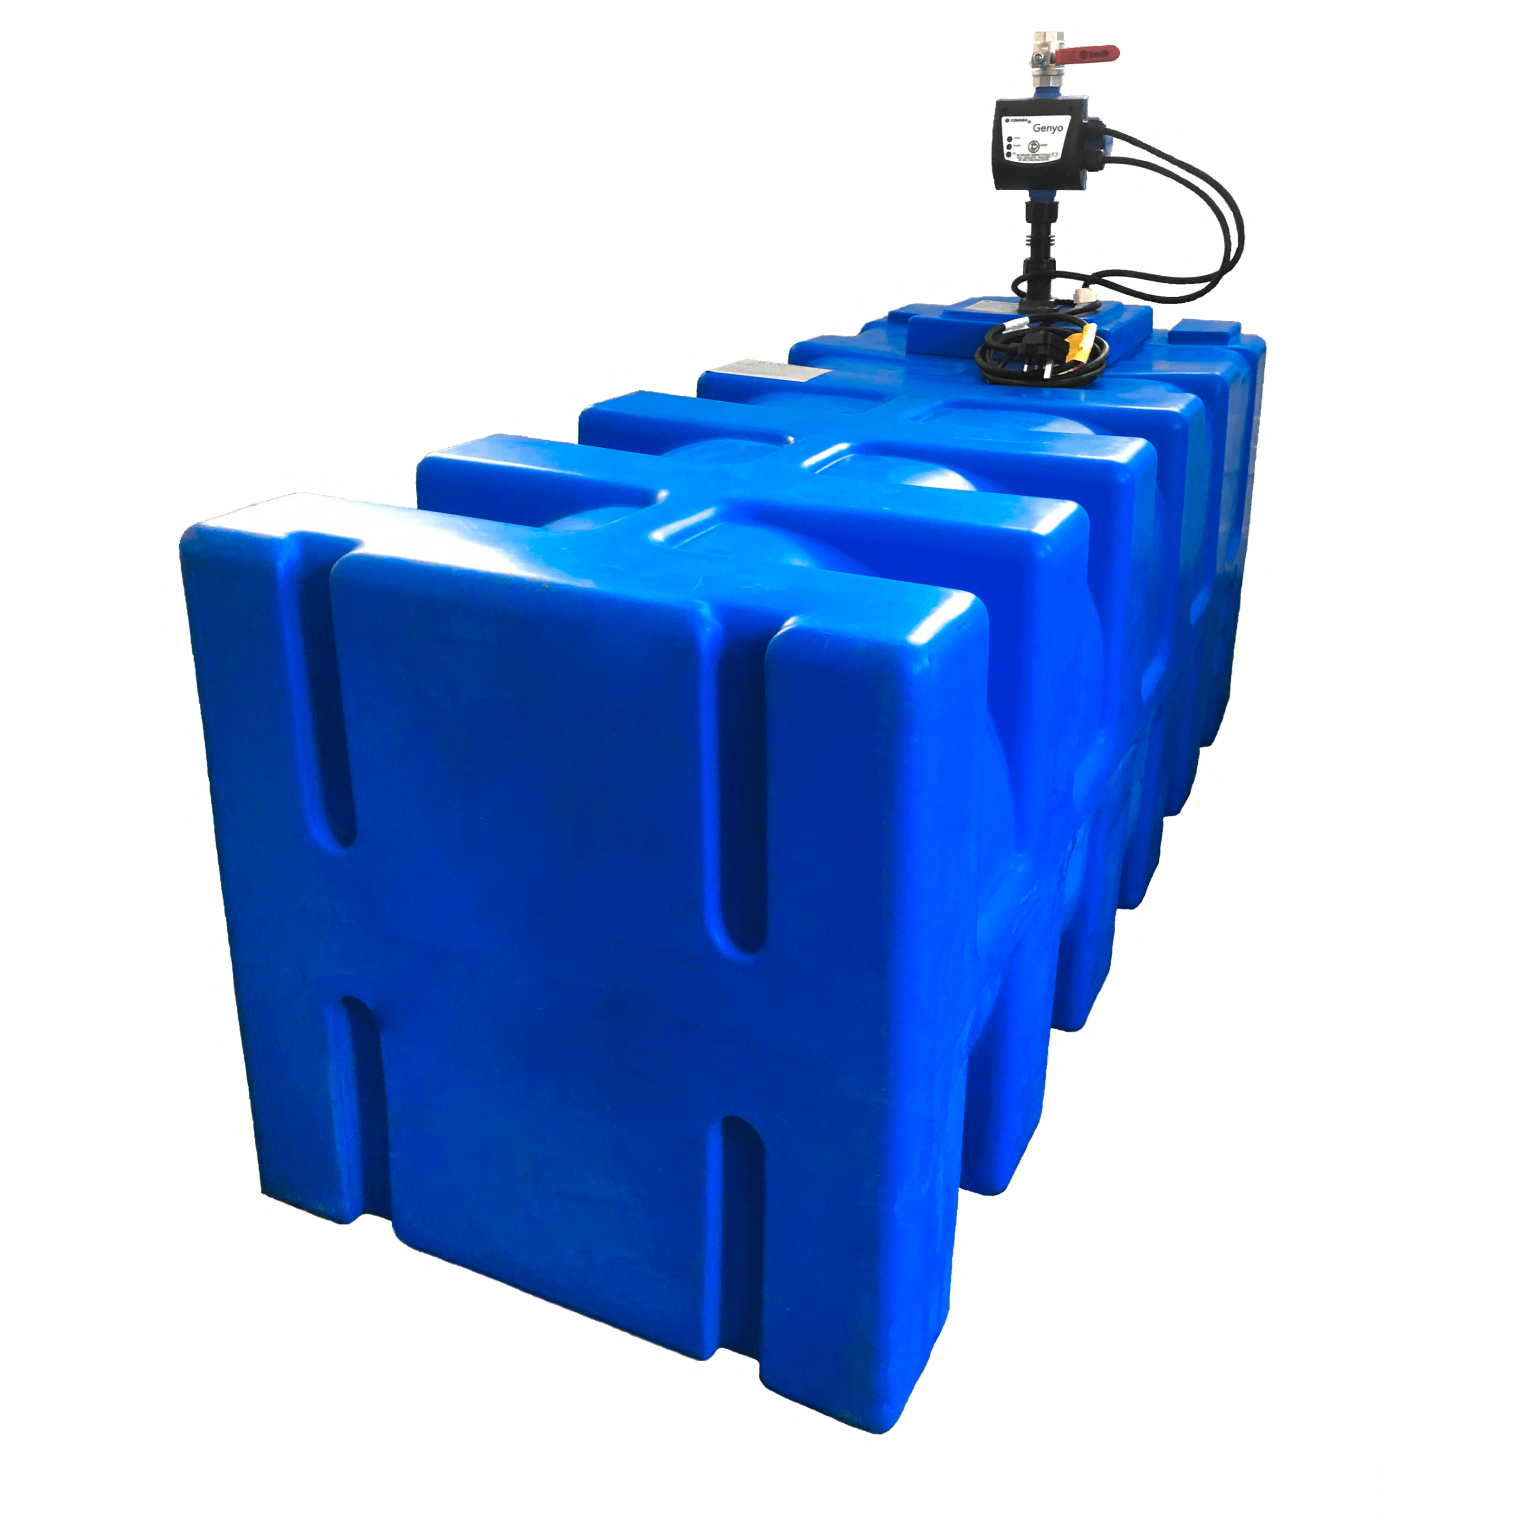 Aquabox Booster Pump Sets 